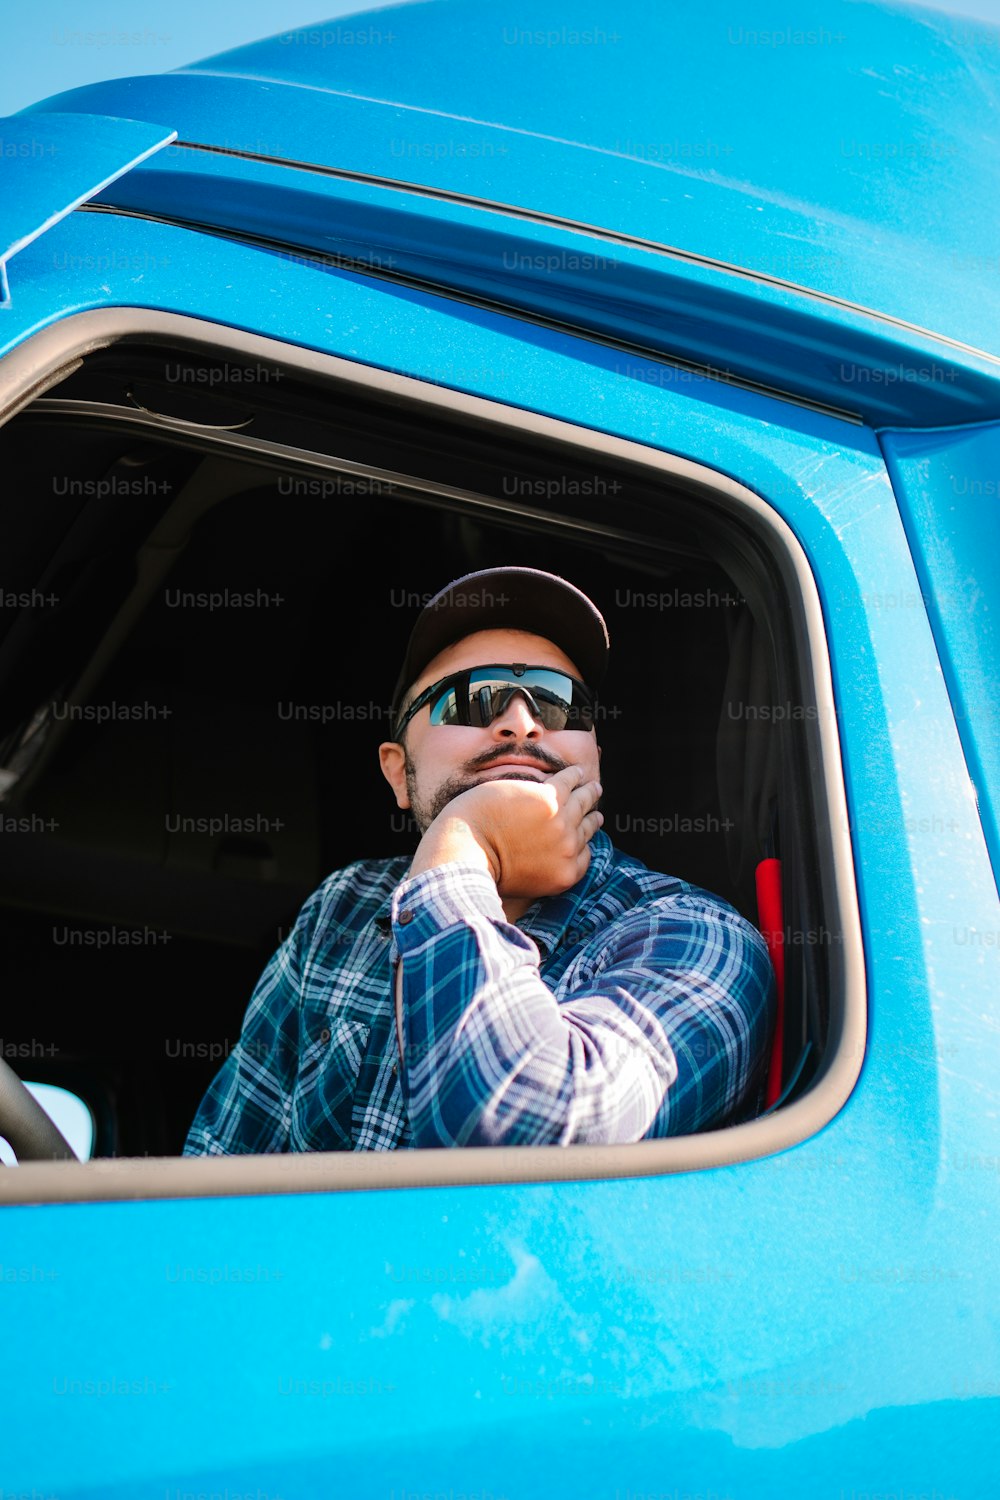 파란 트럭의 운전석에 앉아 있는 남자